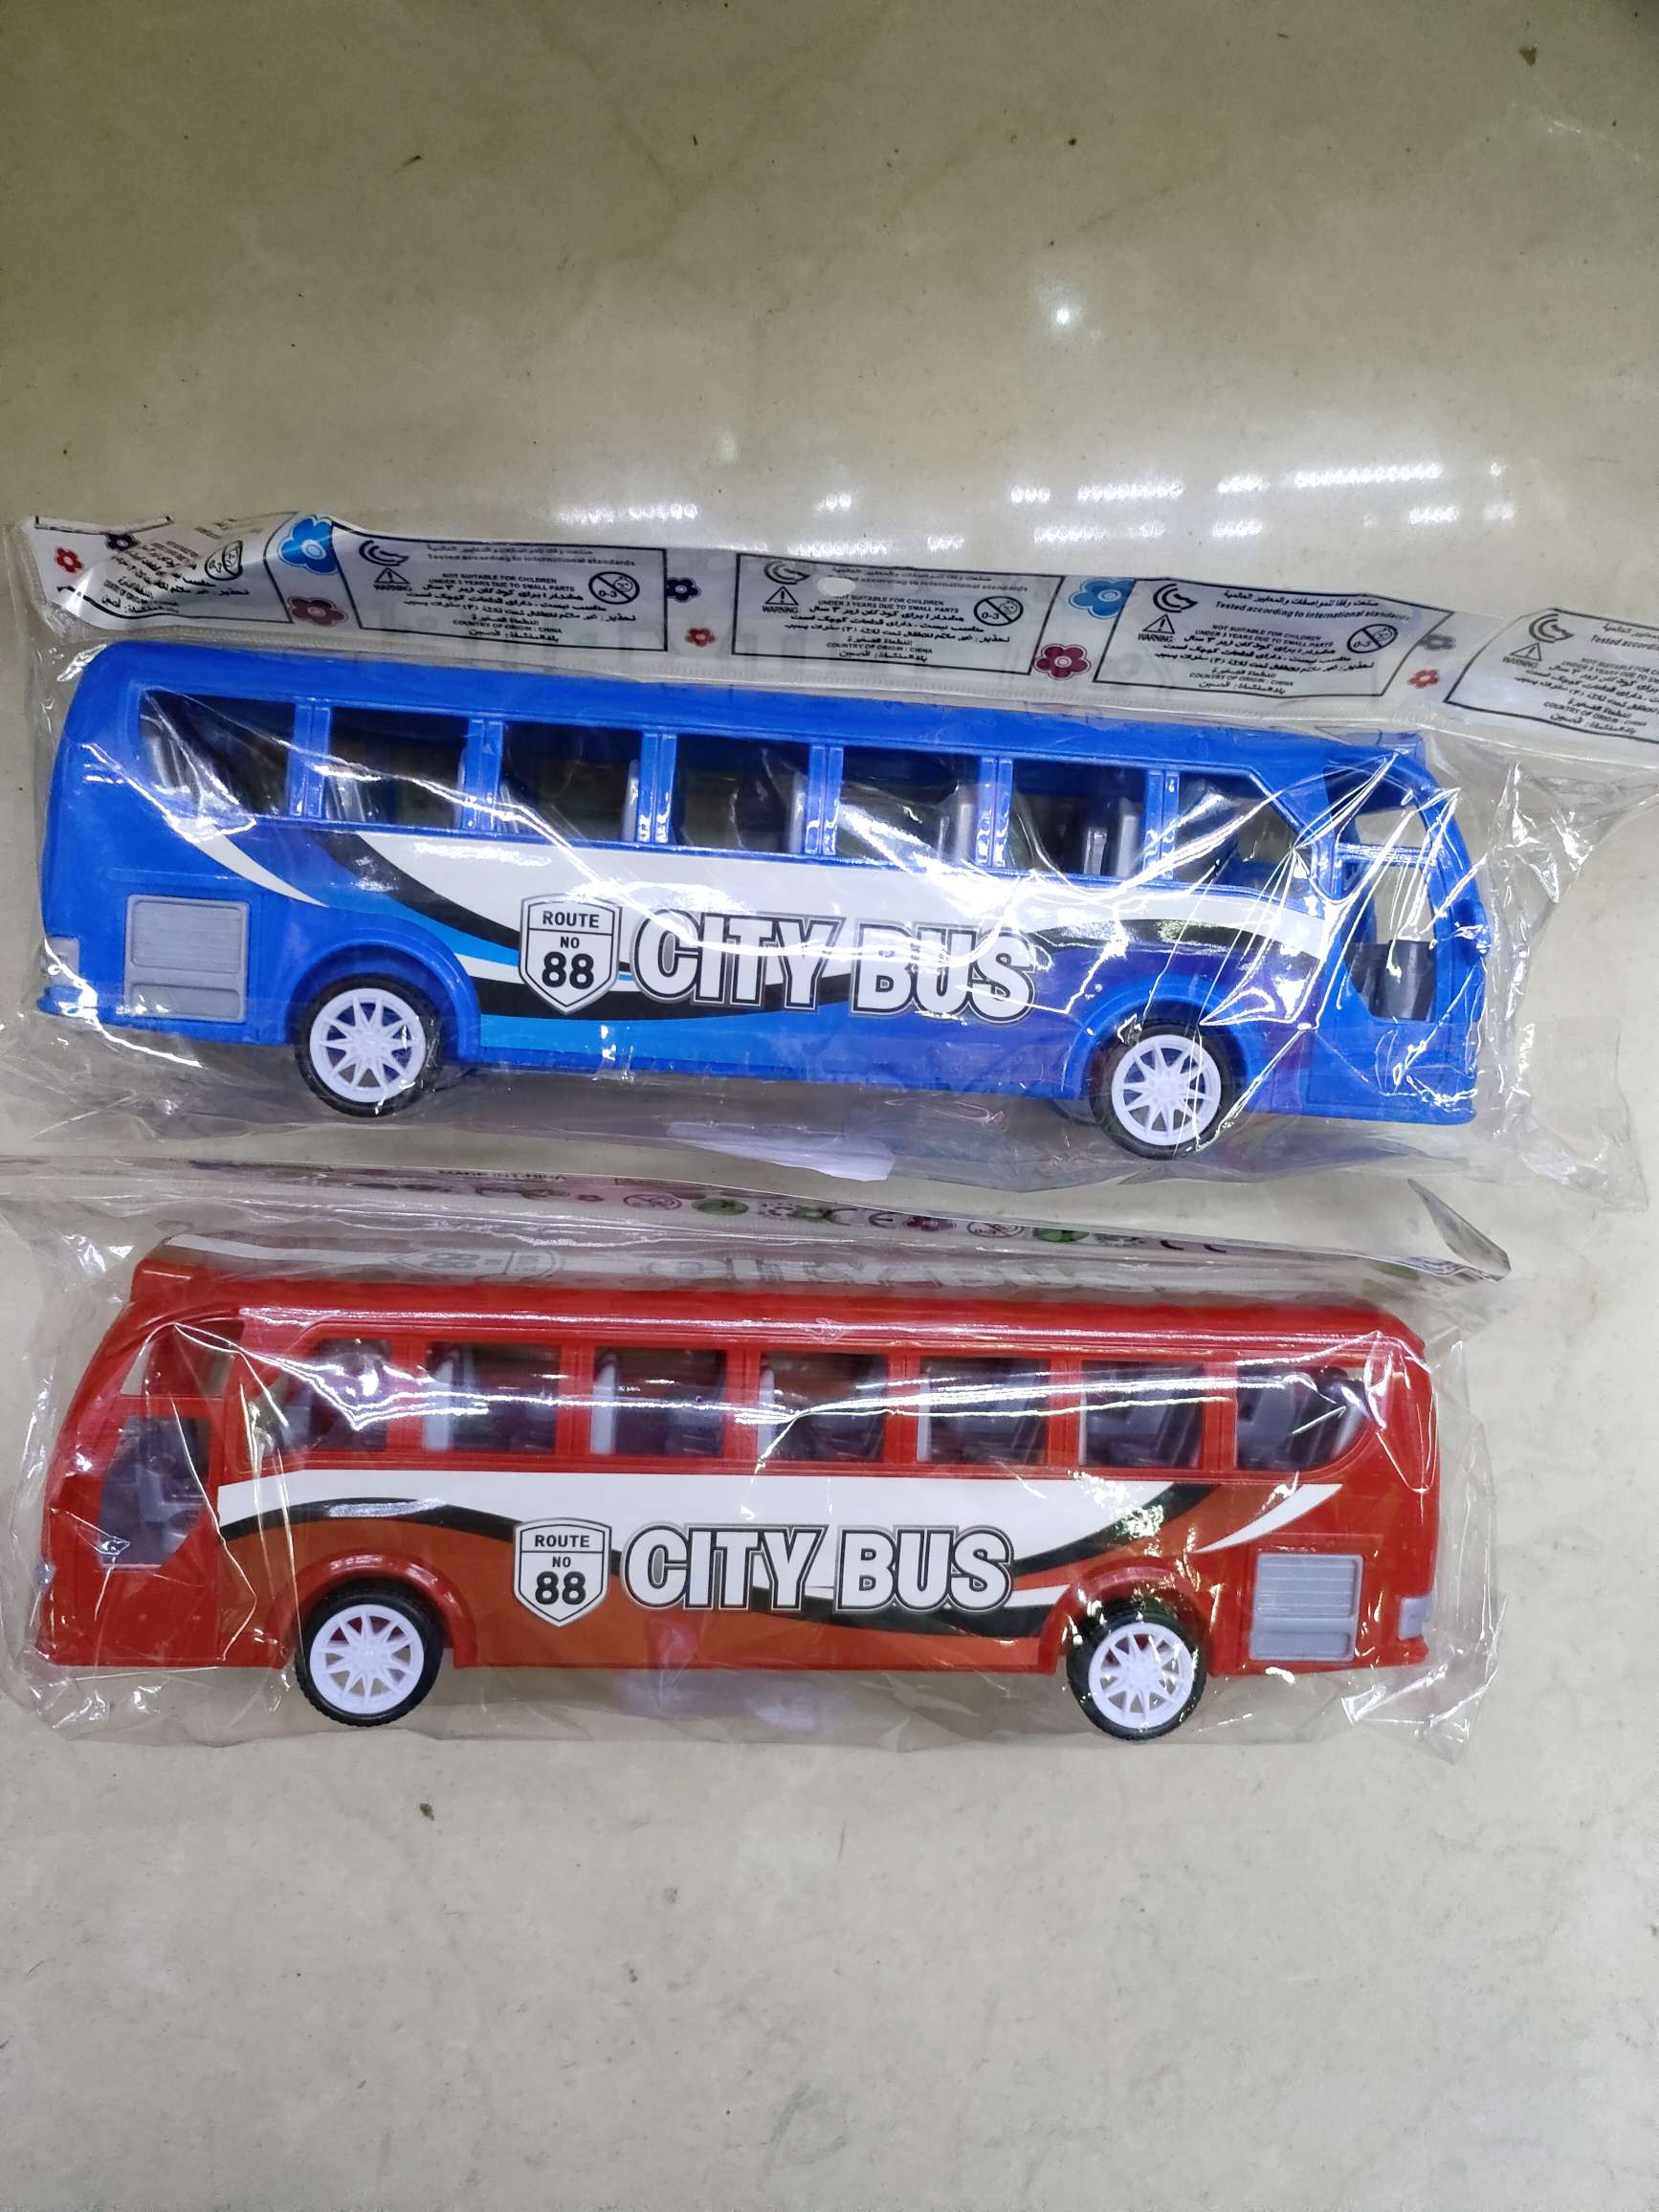 905359-3惯性巴士车，2色混（红蓝），opp袋装。3.9元/个，360个/箱。产品图